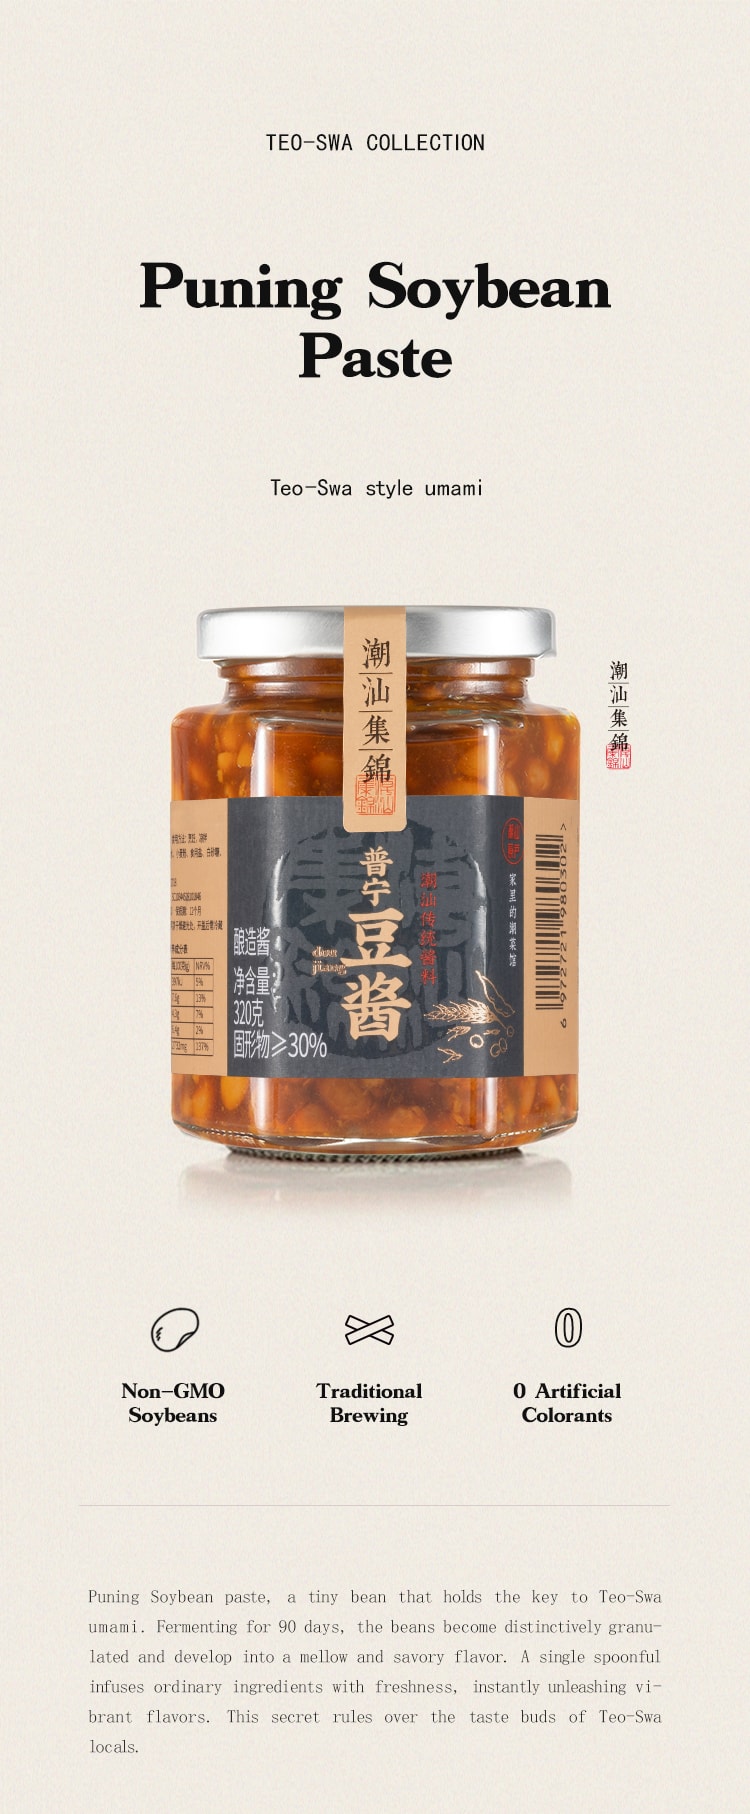 中國潮汕集錦 潮汕特色調味組 魚露 沙茶醬 普寧豆醬 640克